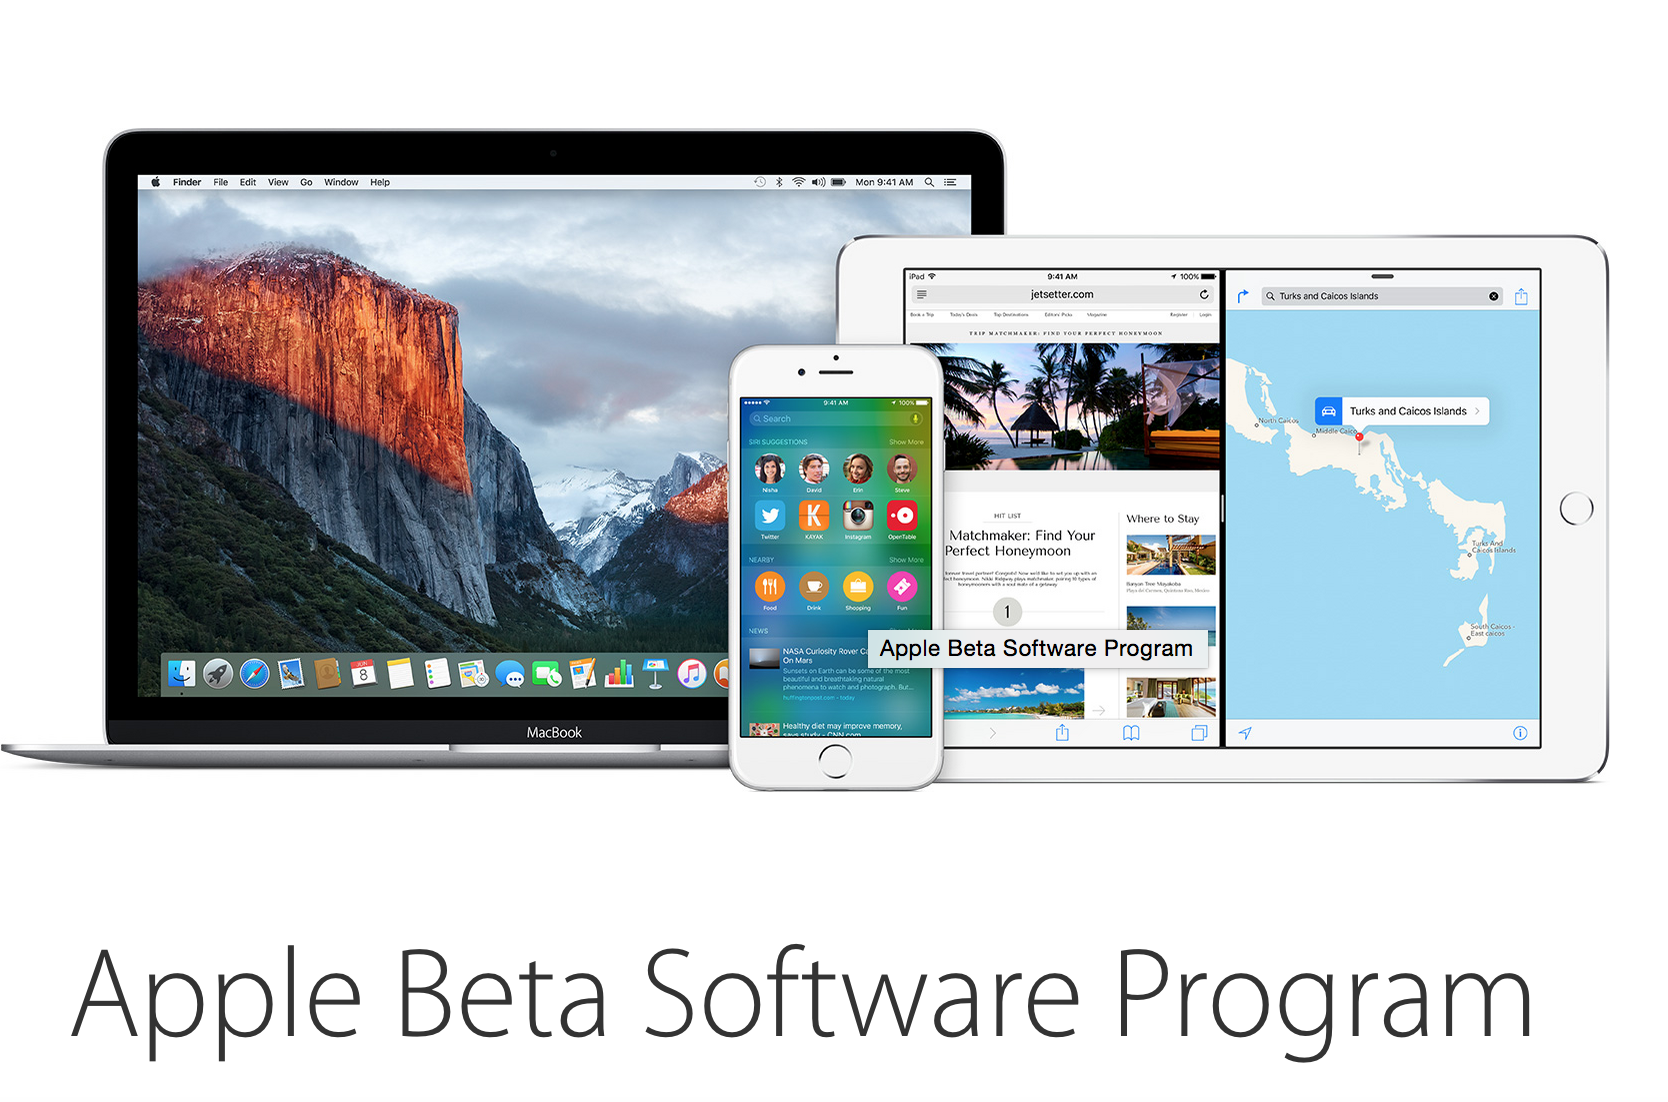 [Tải về]- Apple tung bản iOS 9 beta và OS X 10.11 beta cho mọi người dùng